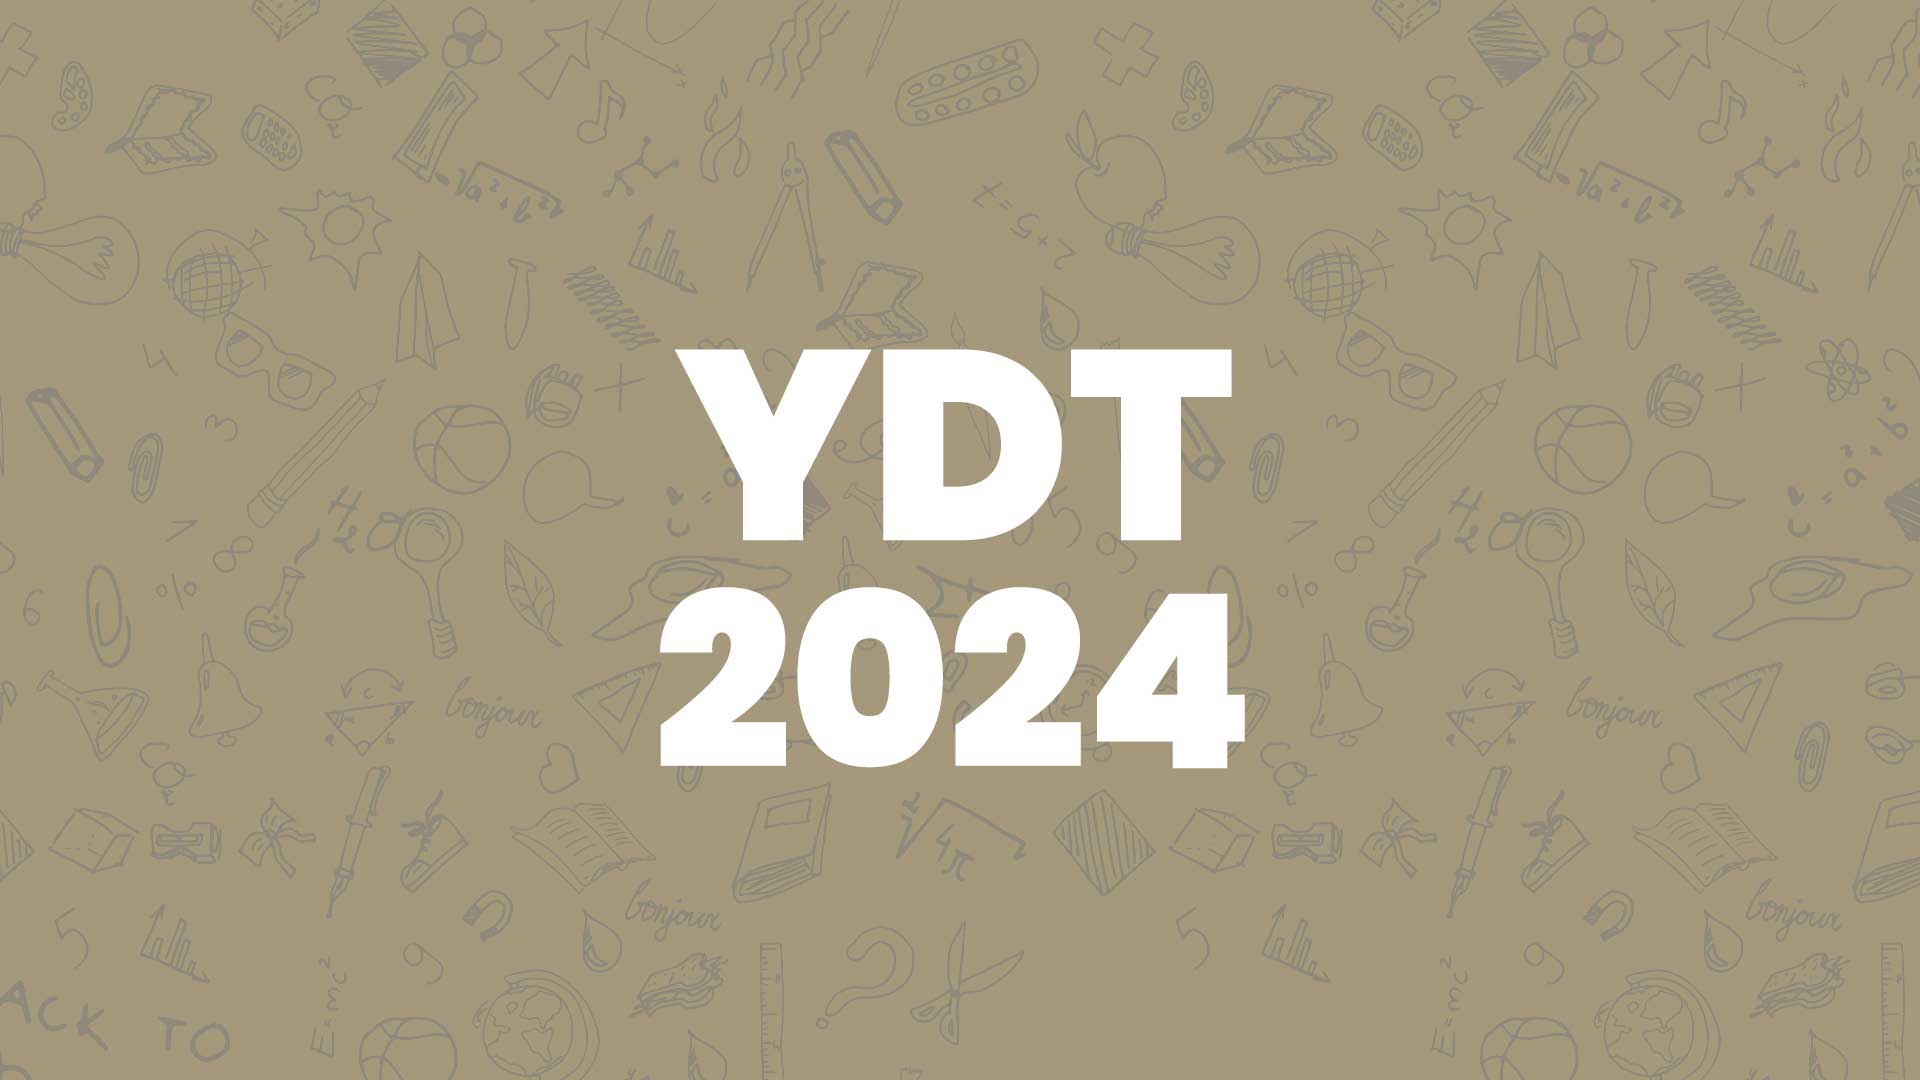 YDT 2024